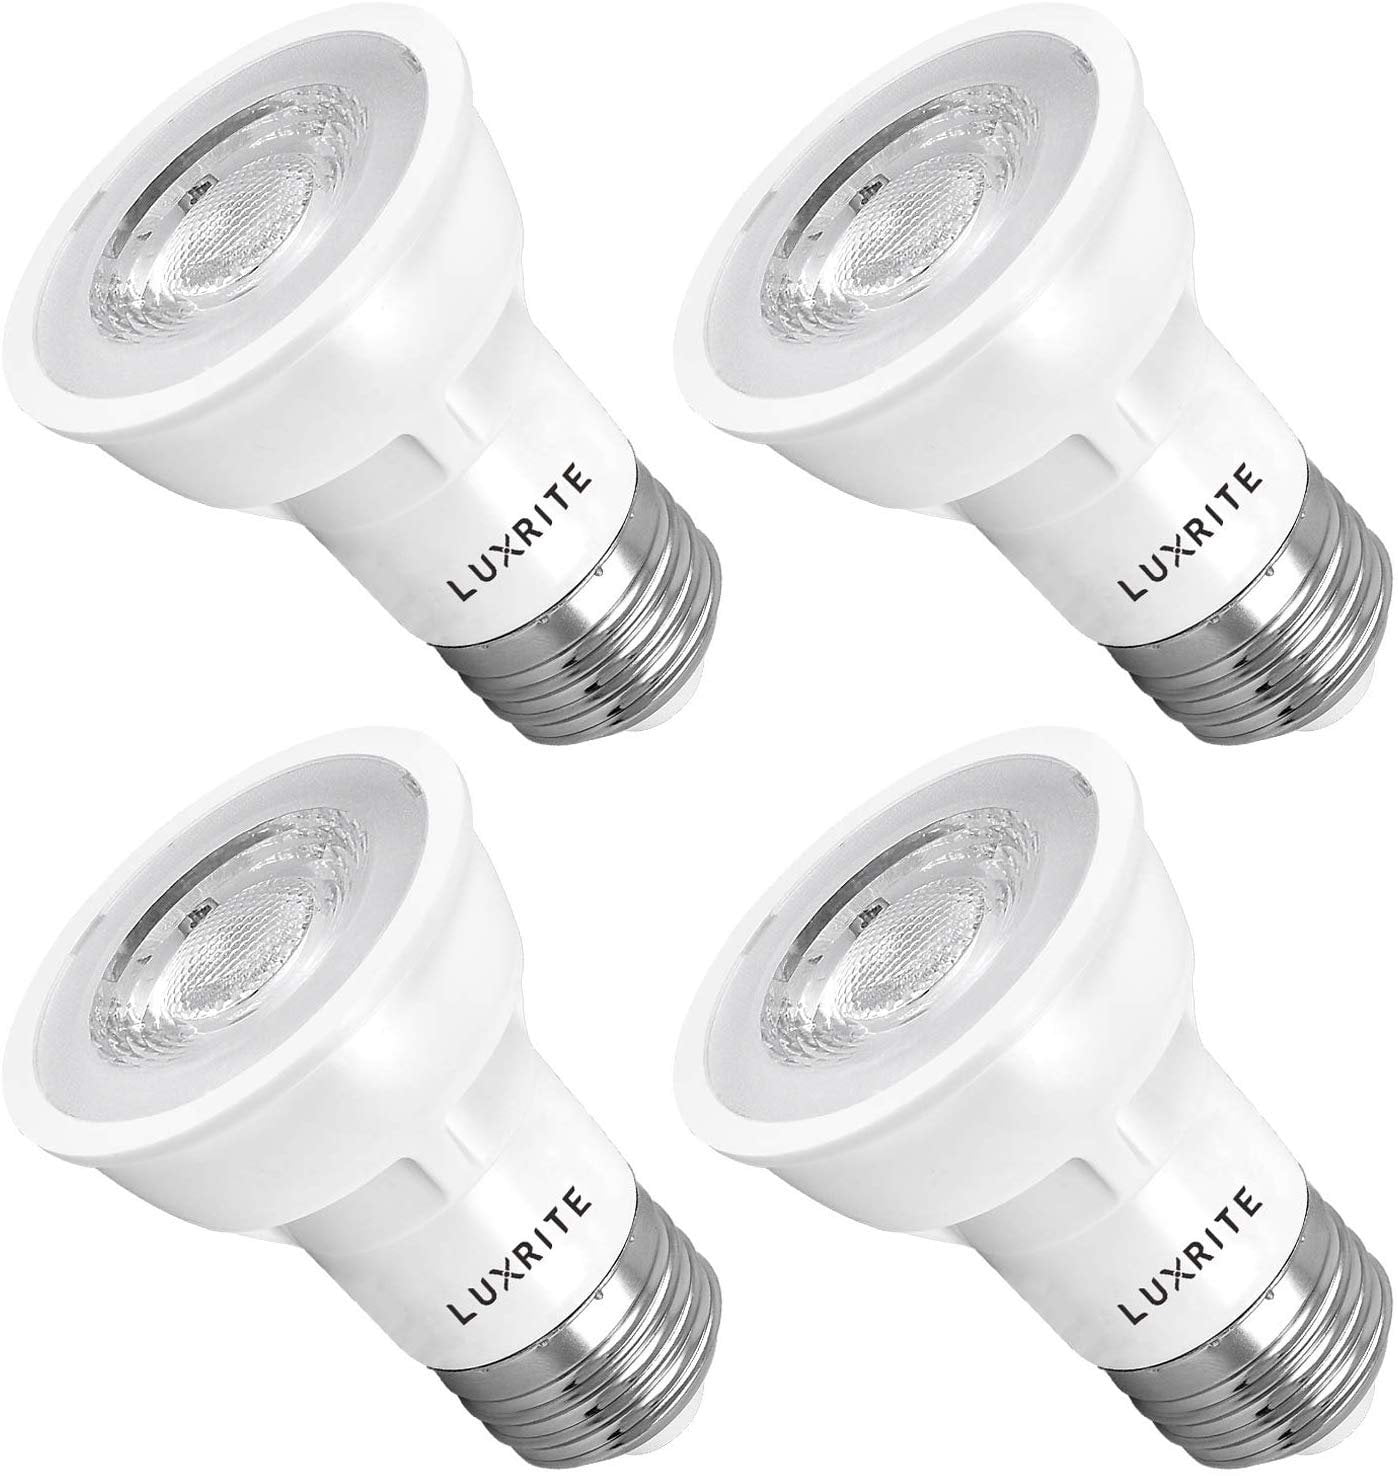 Luxrite PAR16 LED Bulb 5000K 450lm Enclosed Fixture Rated E26 Base 4-Pack 